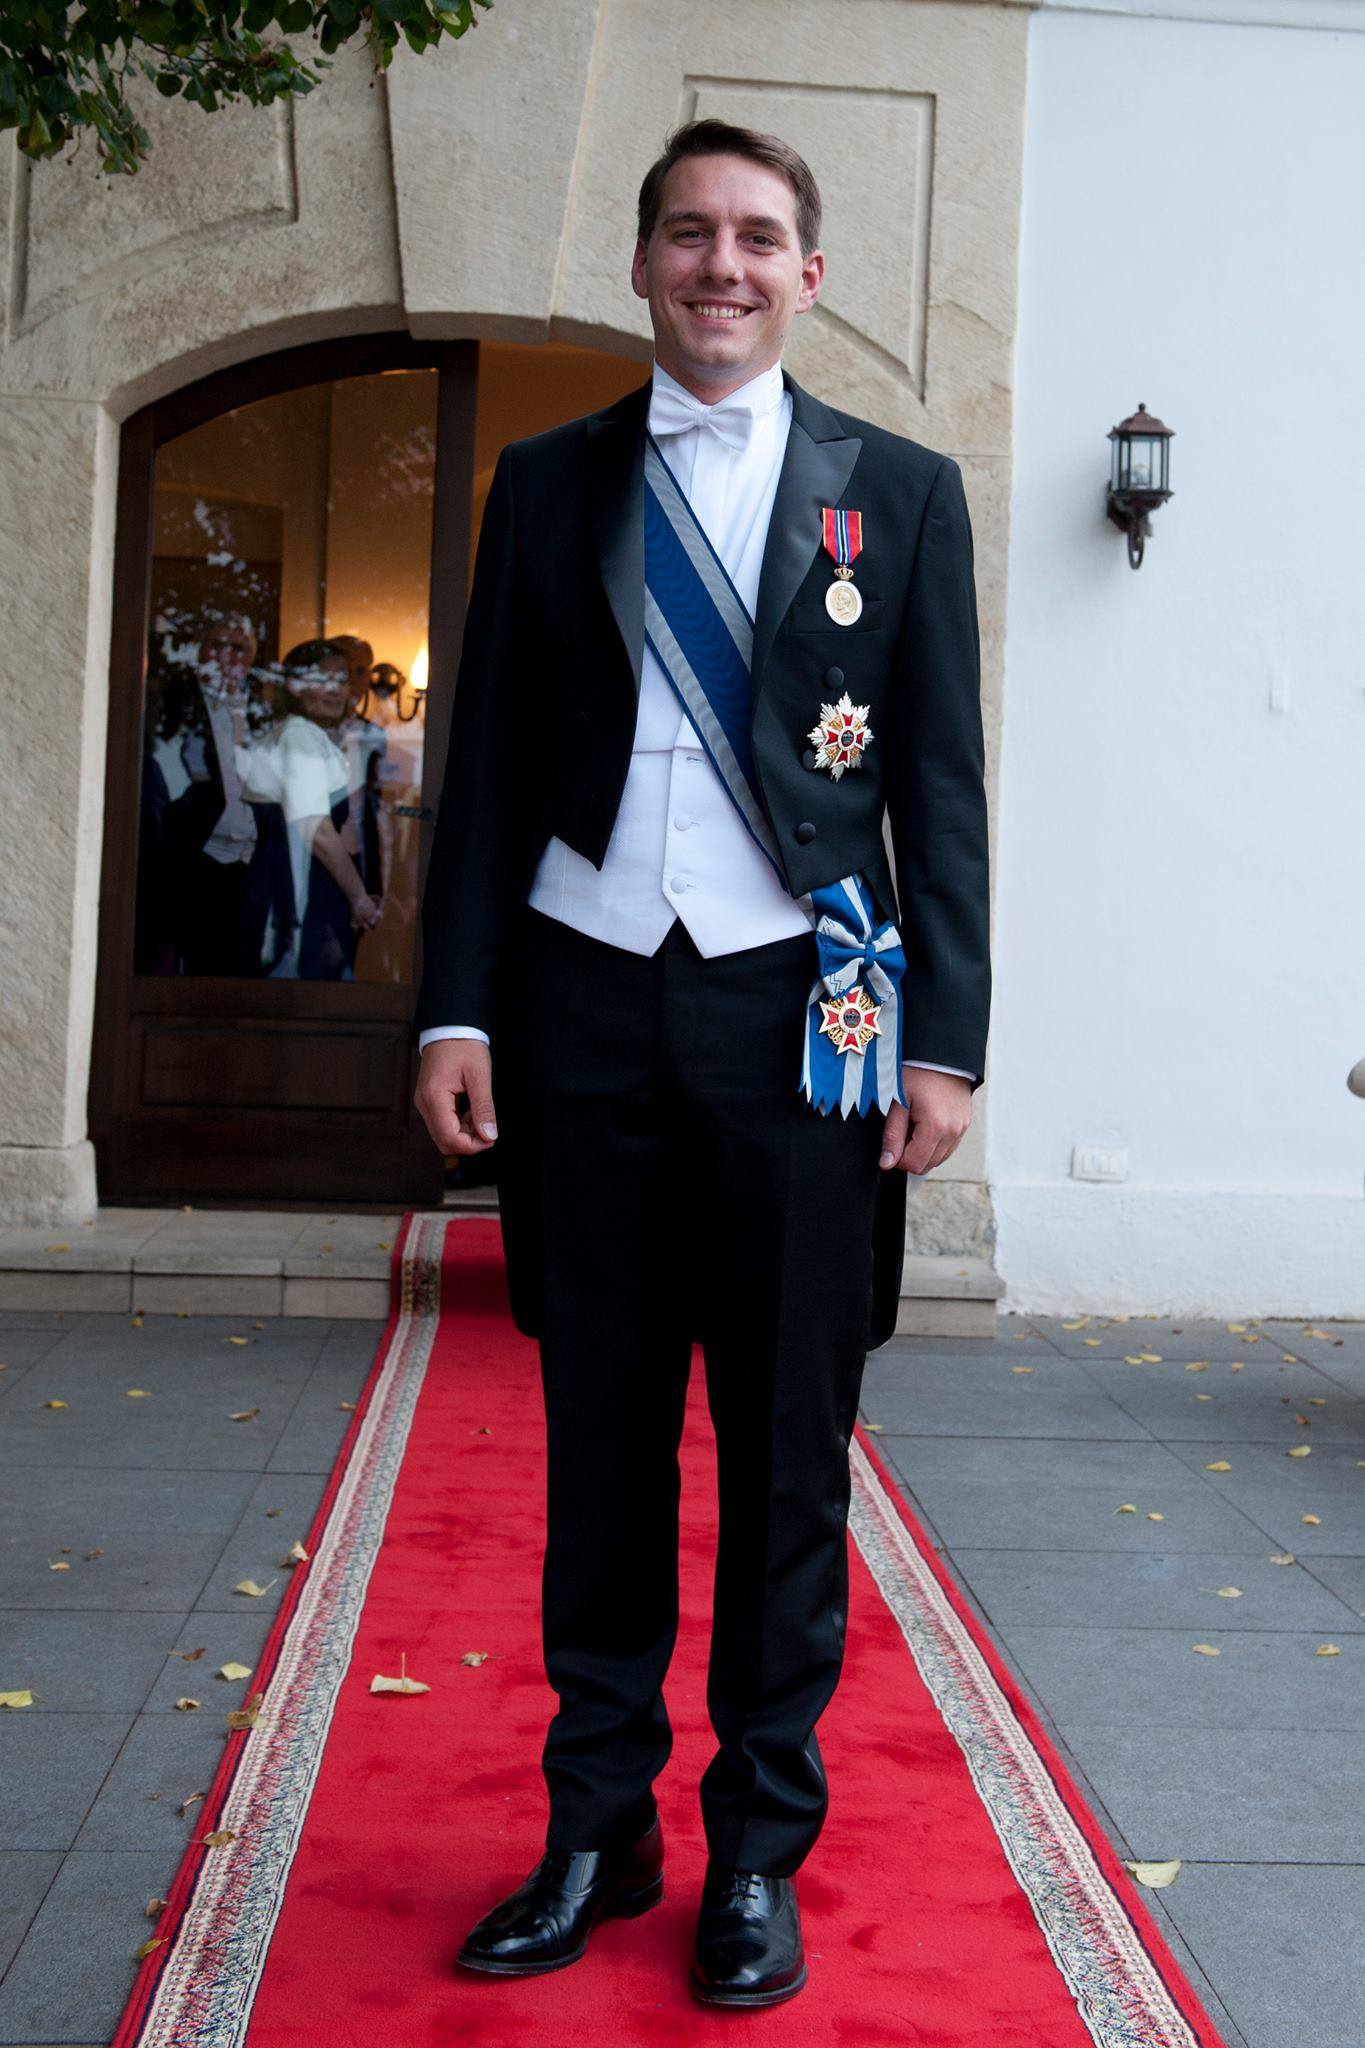 Firefighter Vandalize bypass PROFIL Principele Nicolae, singurul nepot al Regelui Mihai, vazut pana  astazi ca principalul succesor la tronul Romaniei. De la copilul care facea  cu mana multimii din Piata Universitatii in 1992, la excluderea